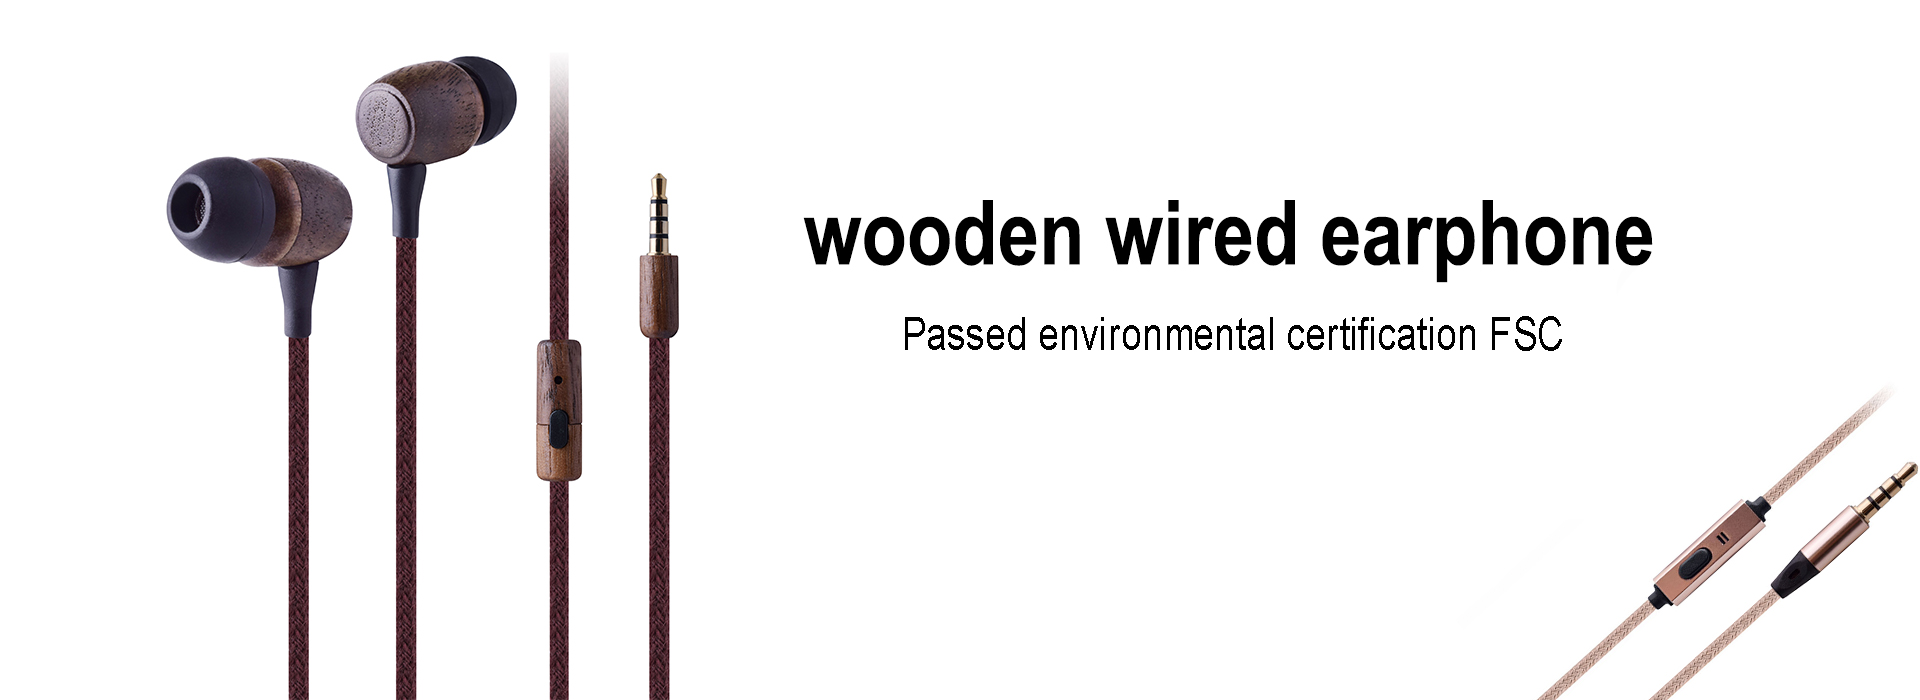  wooden wired earphone